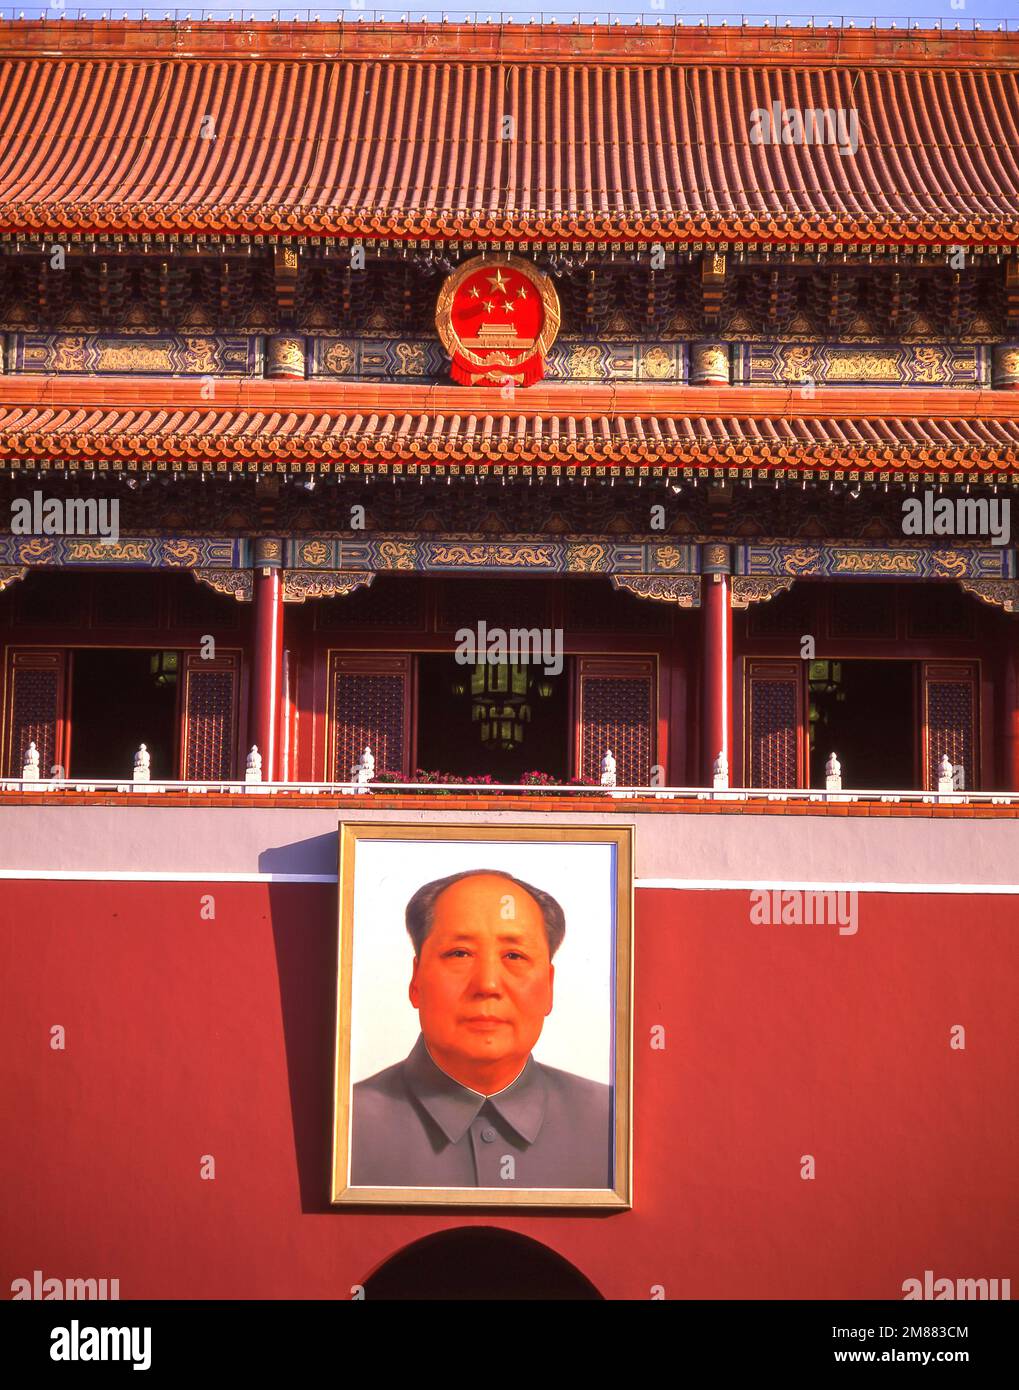 Ritratto del Presidente Mao alla porta di Tiananmen, Piazza Tiananmen, Dongcheng, Pechino, Pechino e Nord-est, La Repubblica popolare cinese Foto Stock